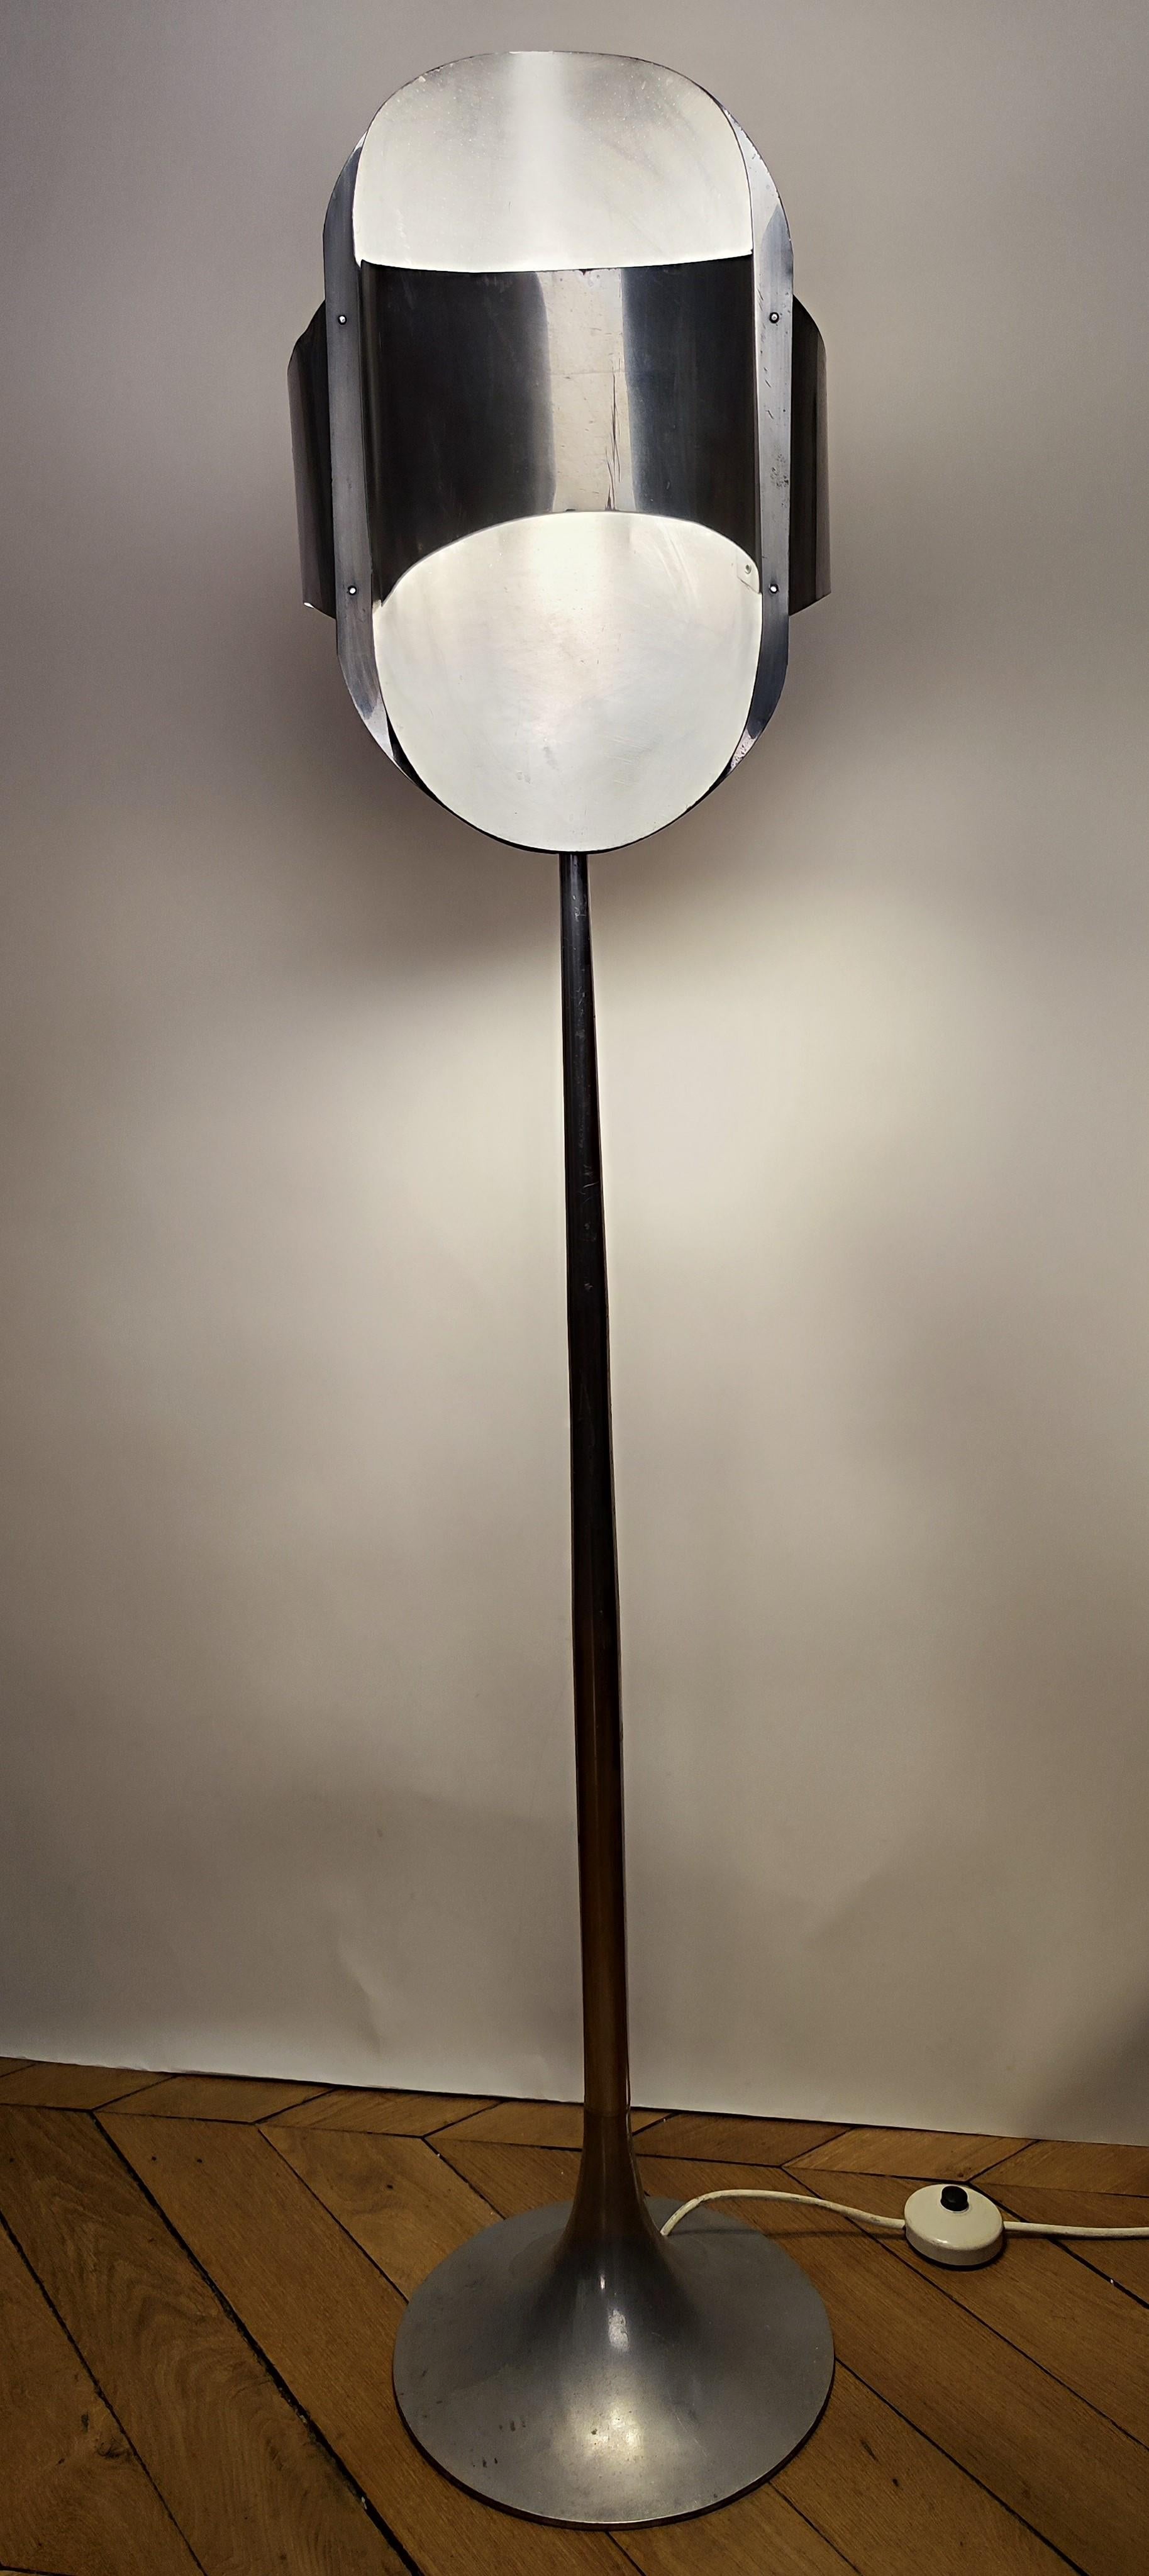 Superbe lampadaire qui semble être en aluminium.
.
Elle peut être attribuée à Roger Tallon - 1965-1970 - France.
.
Aucune attribution exacte n'a été trouvée, mais cela ressemble vraiment à...
.
Il s'agit d'un mélange entre le lampadaire dit 